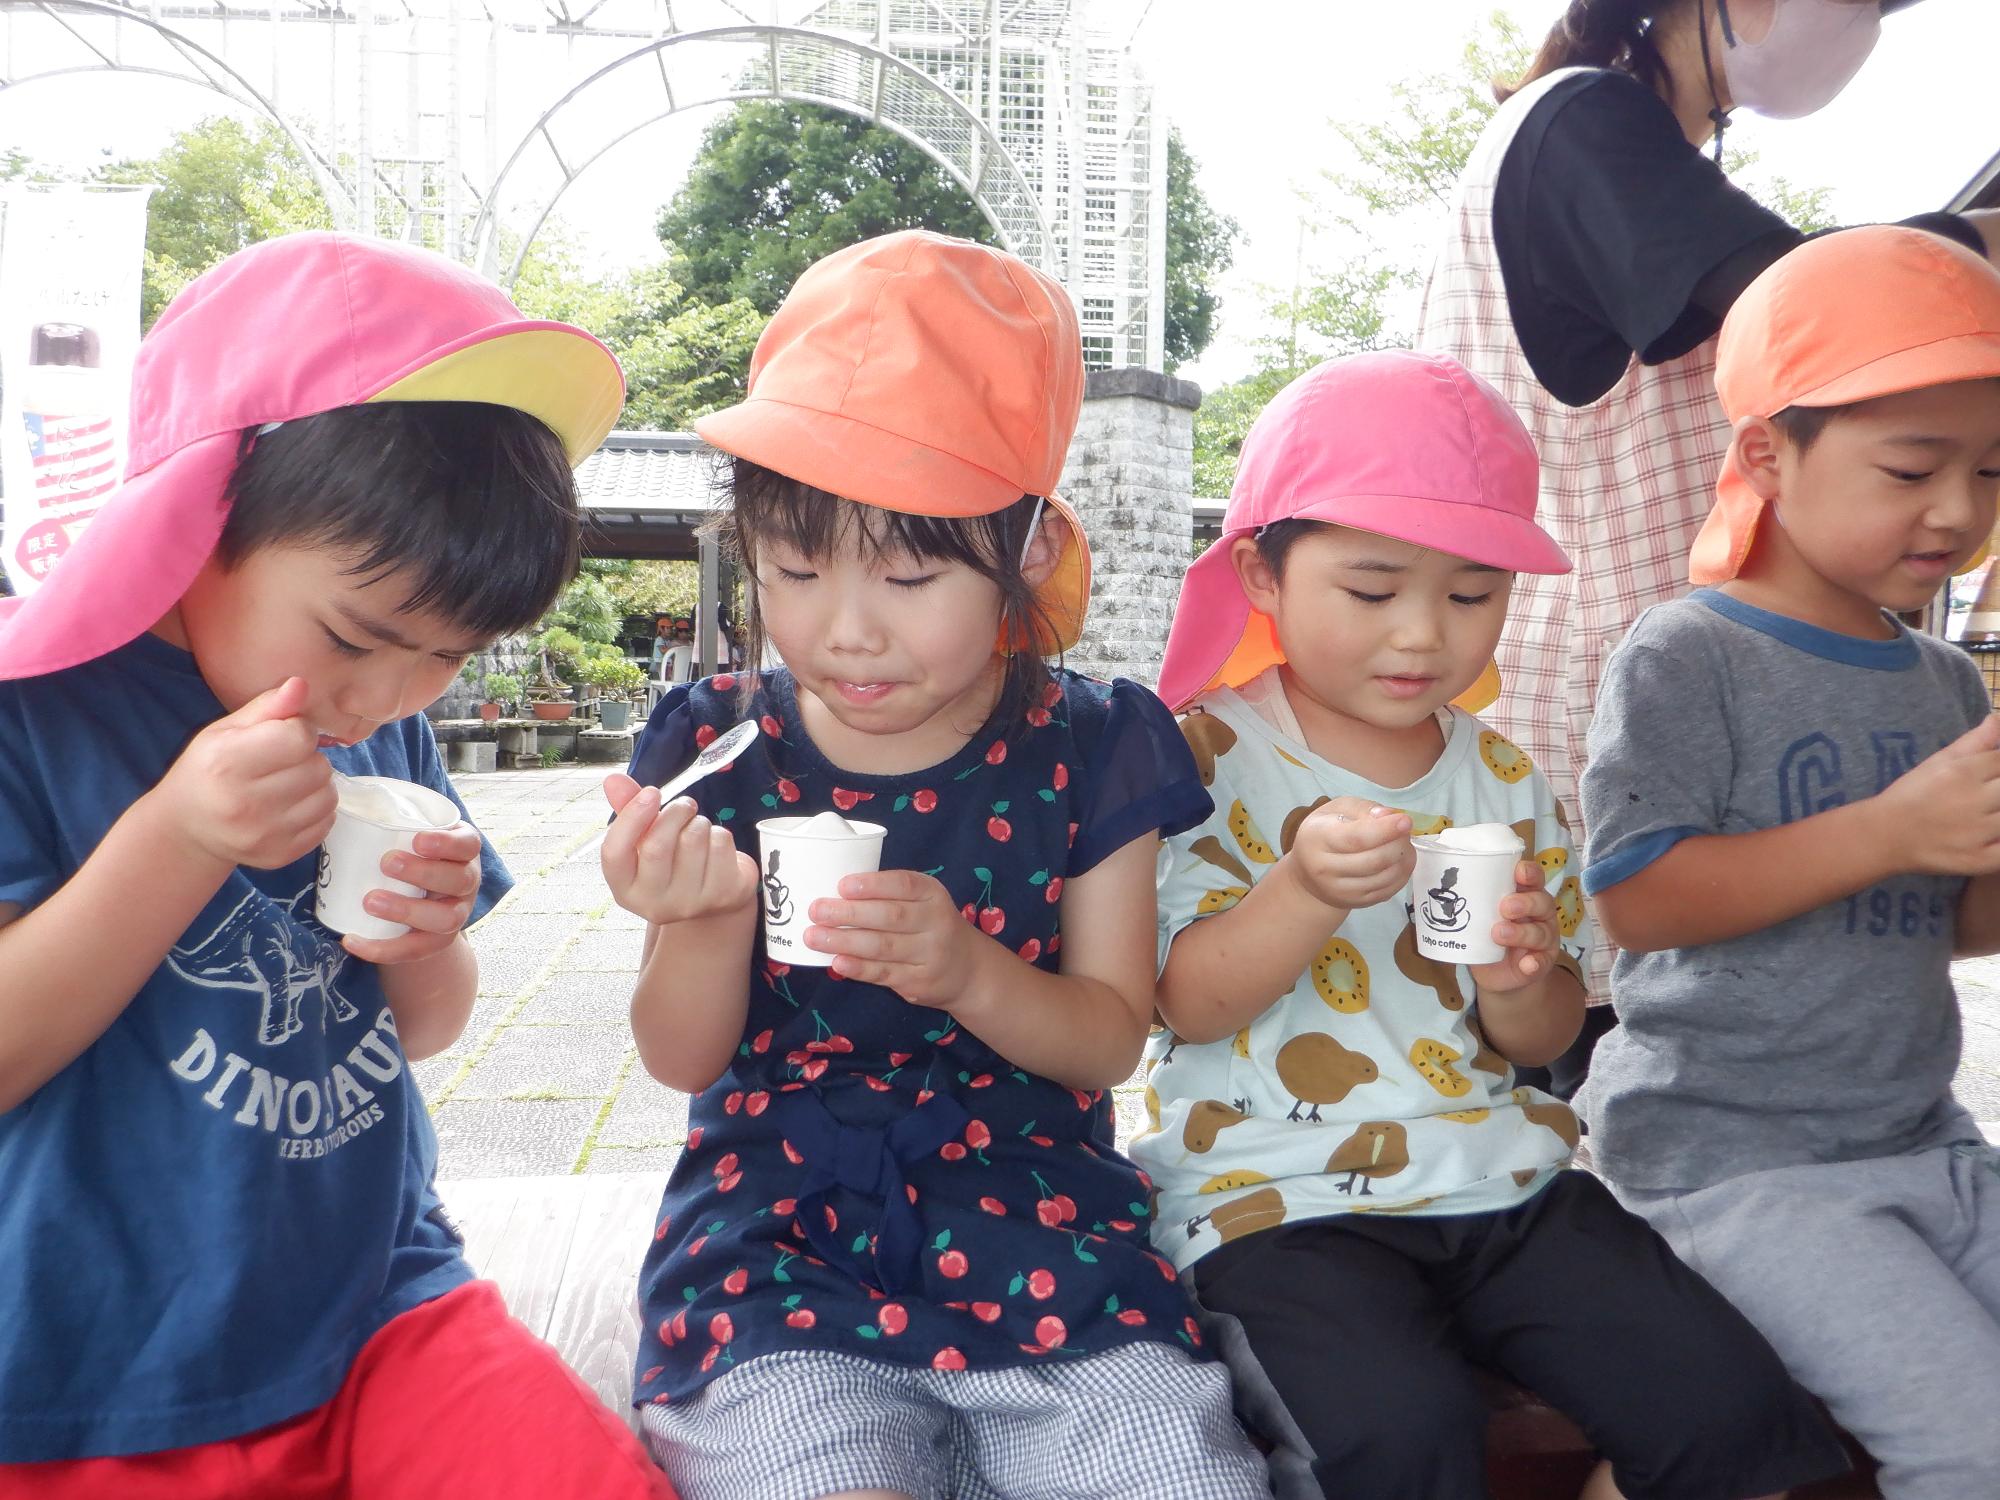 ベンチに座っている子ども、ご褒美のソフトクリームを食べている、嬉しそうな子ども、